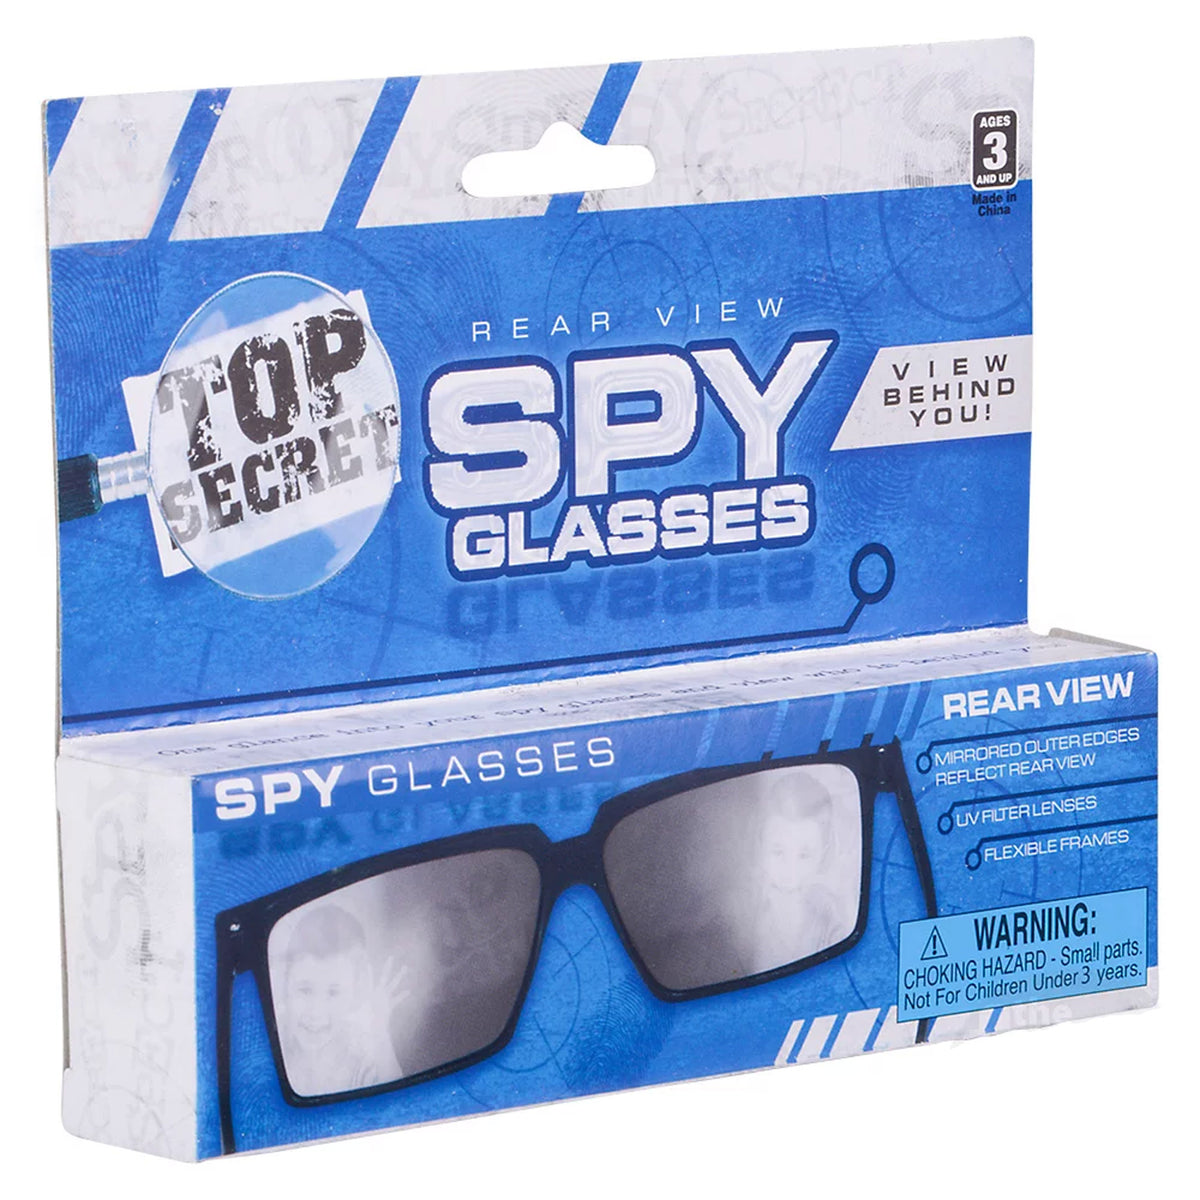 Spy Look Behind Sunglasses For Kids In Bulk